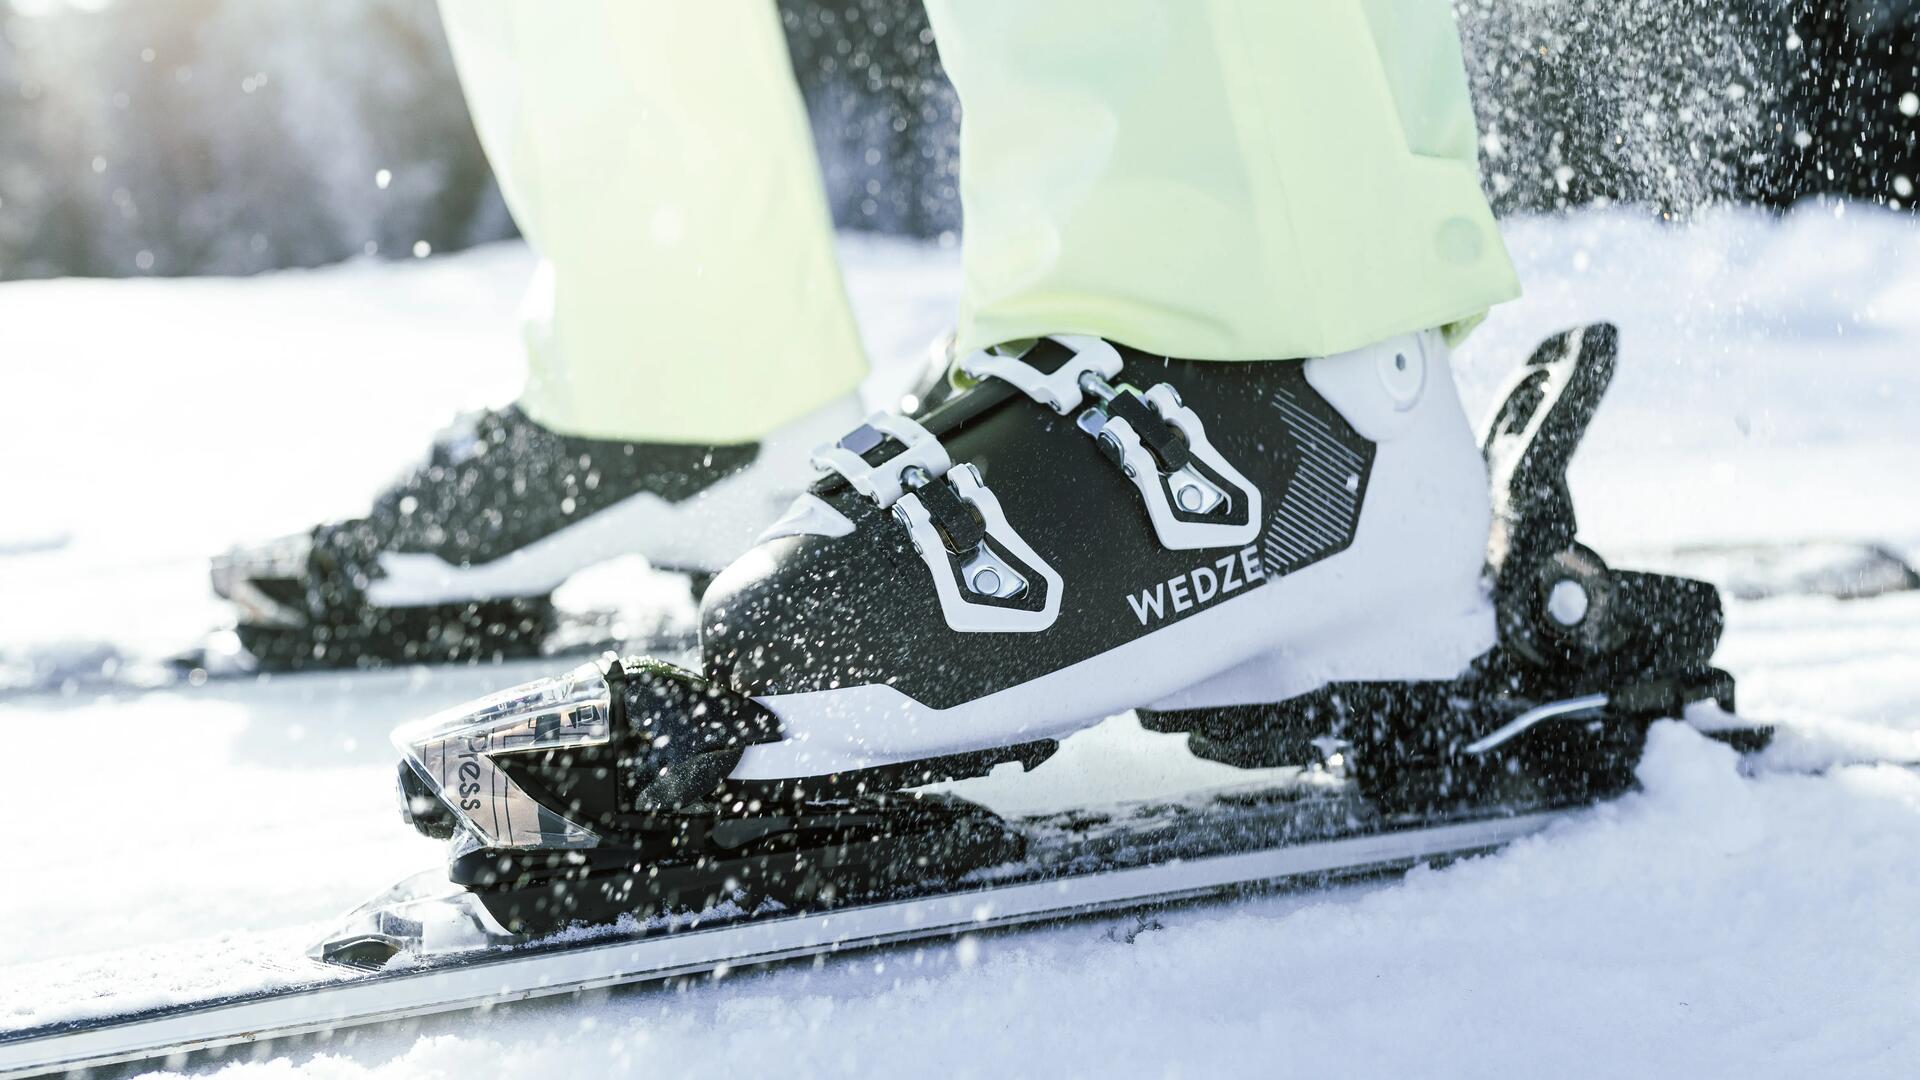 black and white wedze ski boot